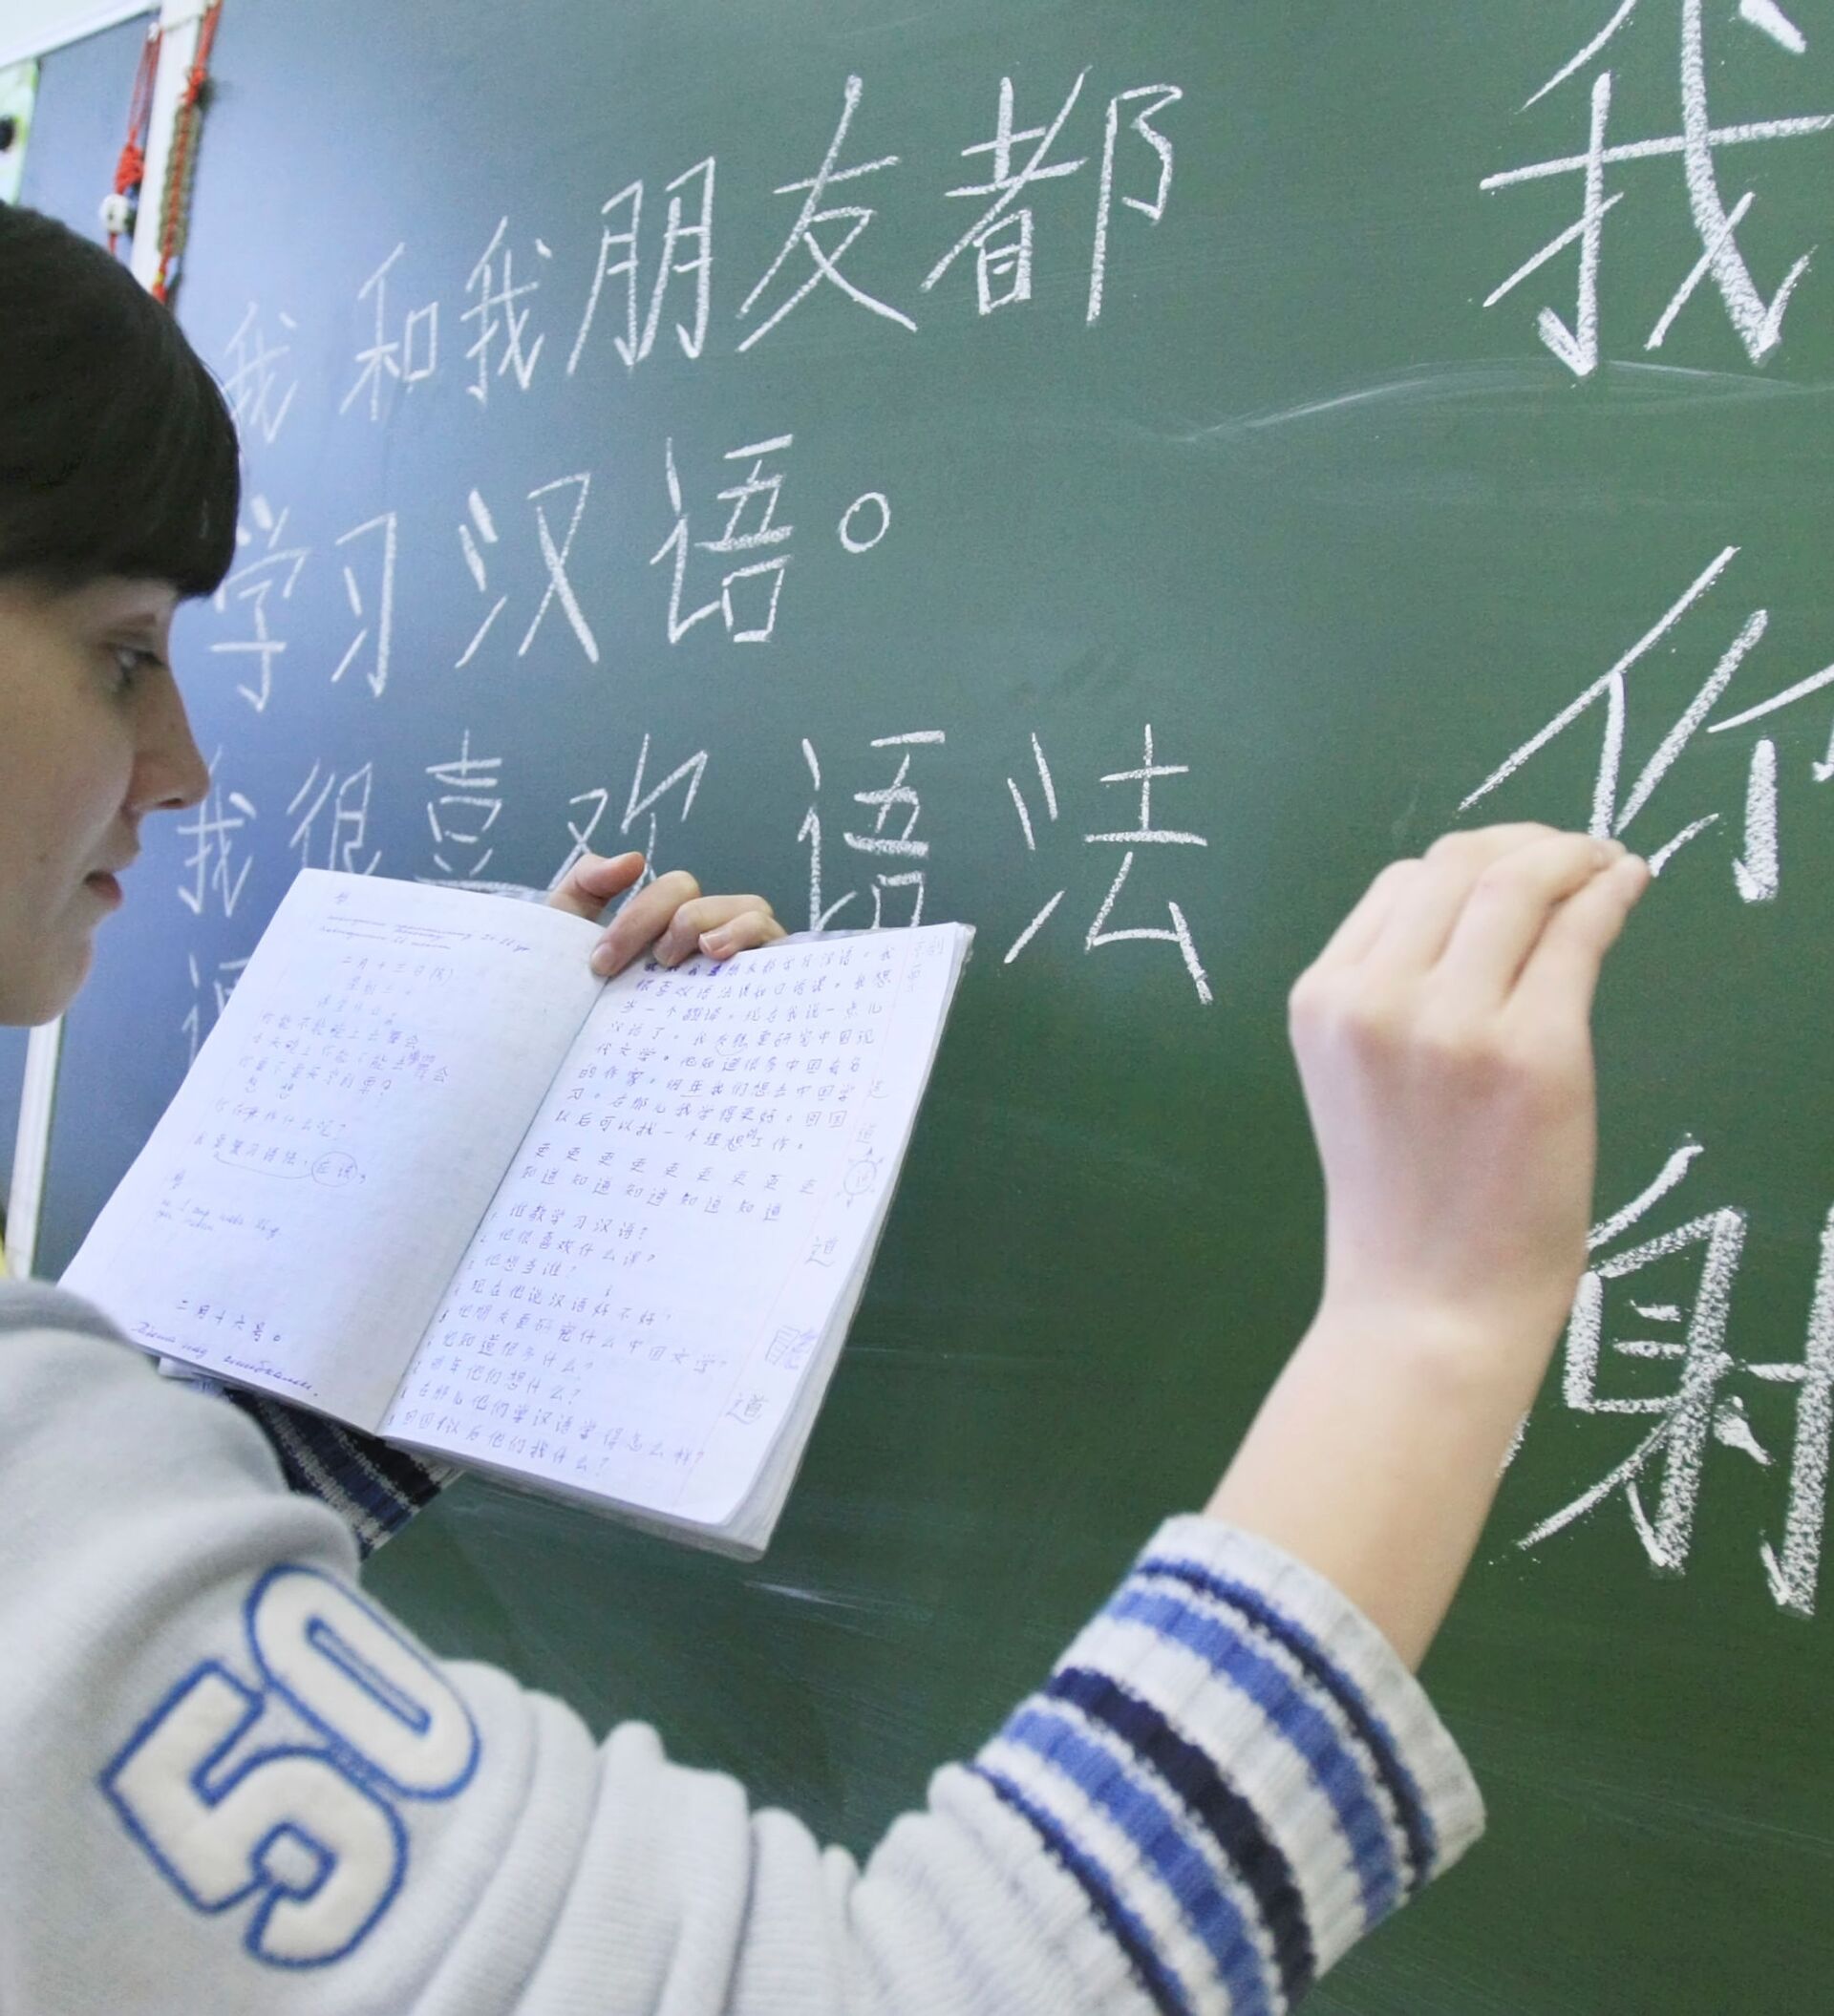 Китайский урок 6. Школа китайского языка. Учим китайский. Урок китайского языка в школе. Школьники изучают китайский язык.